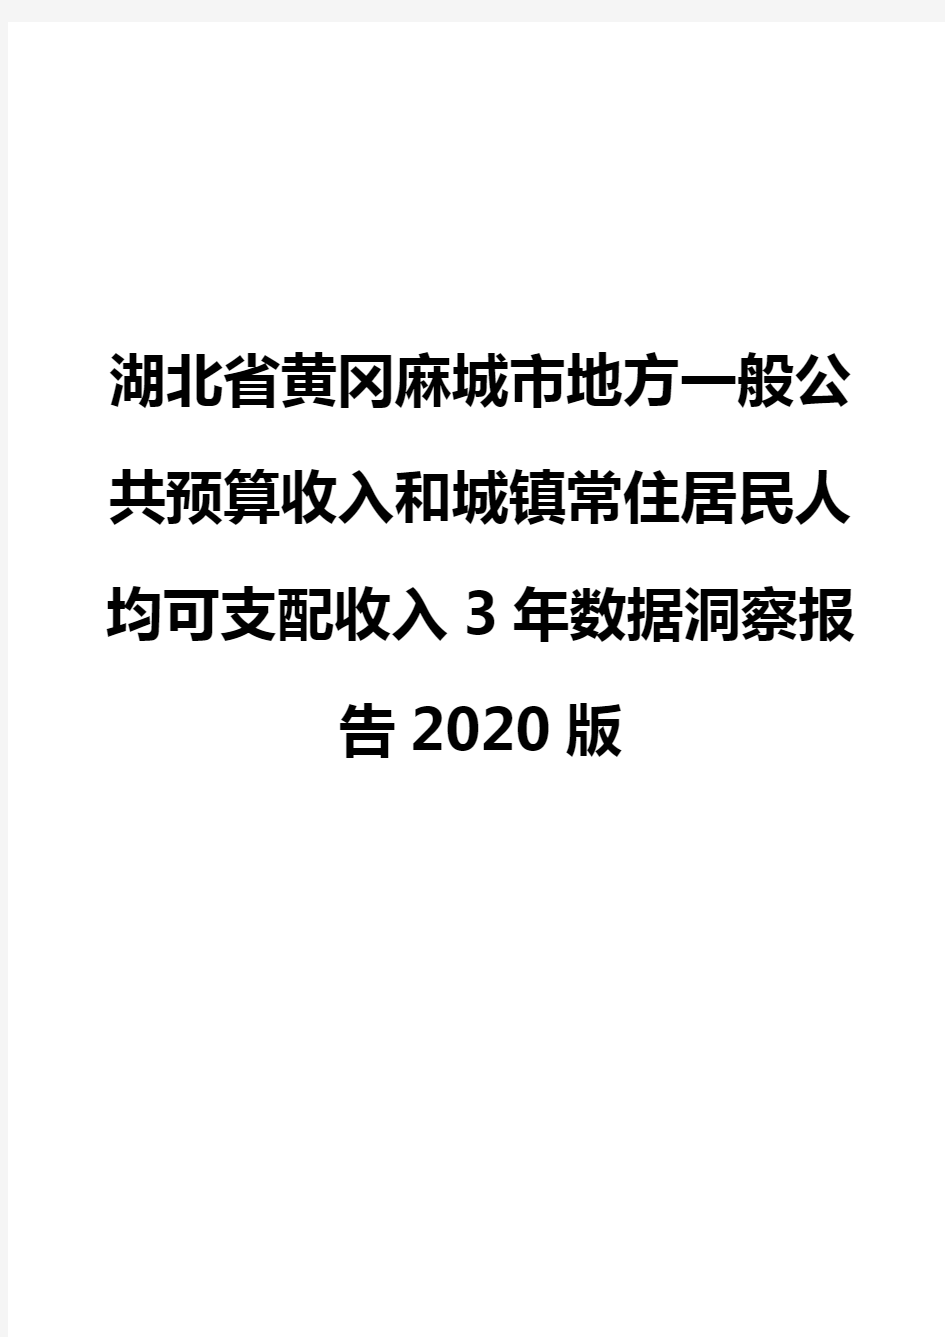 湖北省黄冈麻城市地方一般公共预算收入和城镇常住居民人均可支配收入3年数据洞察报告2020版